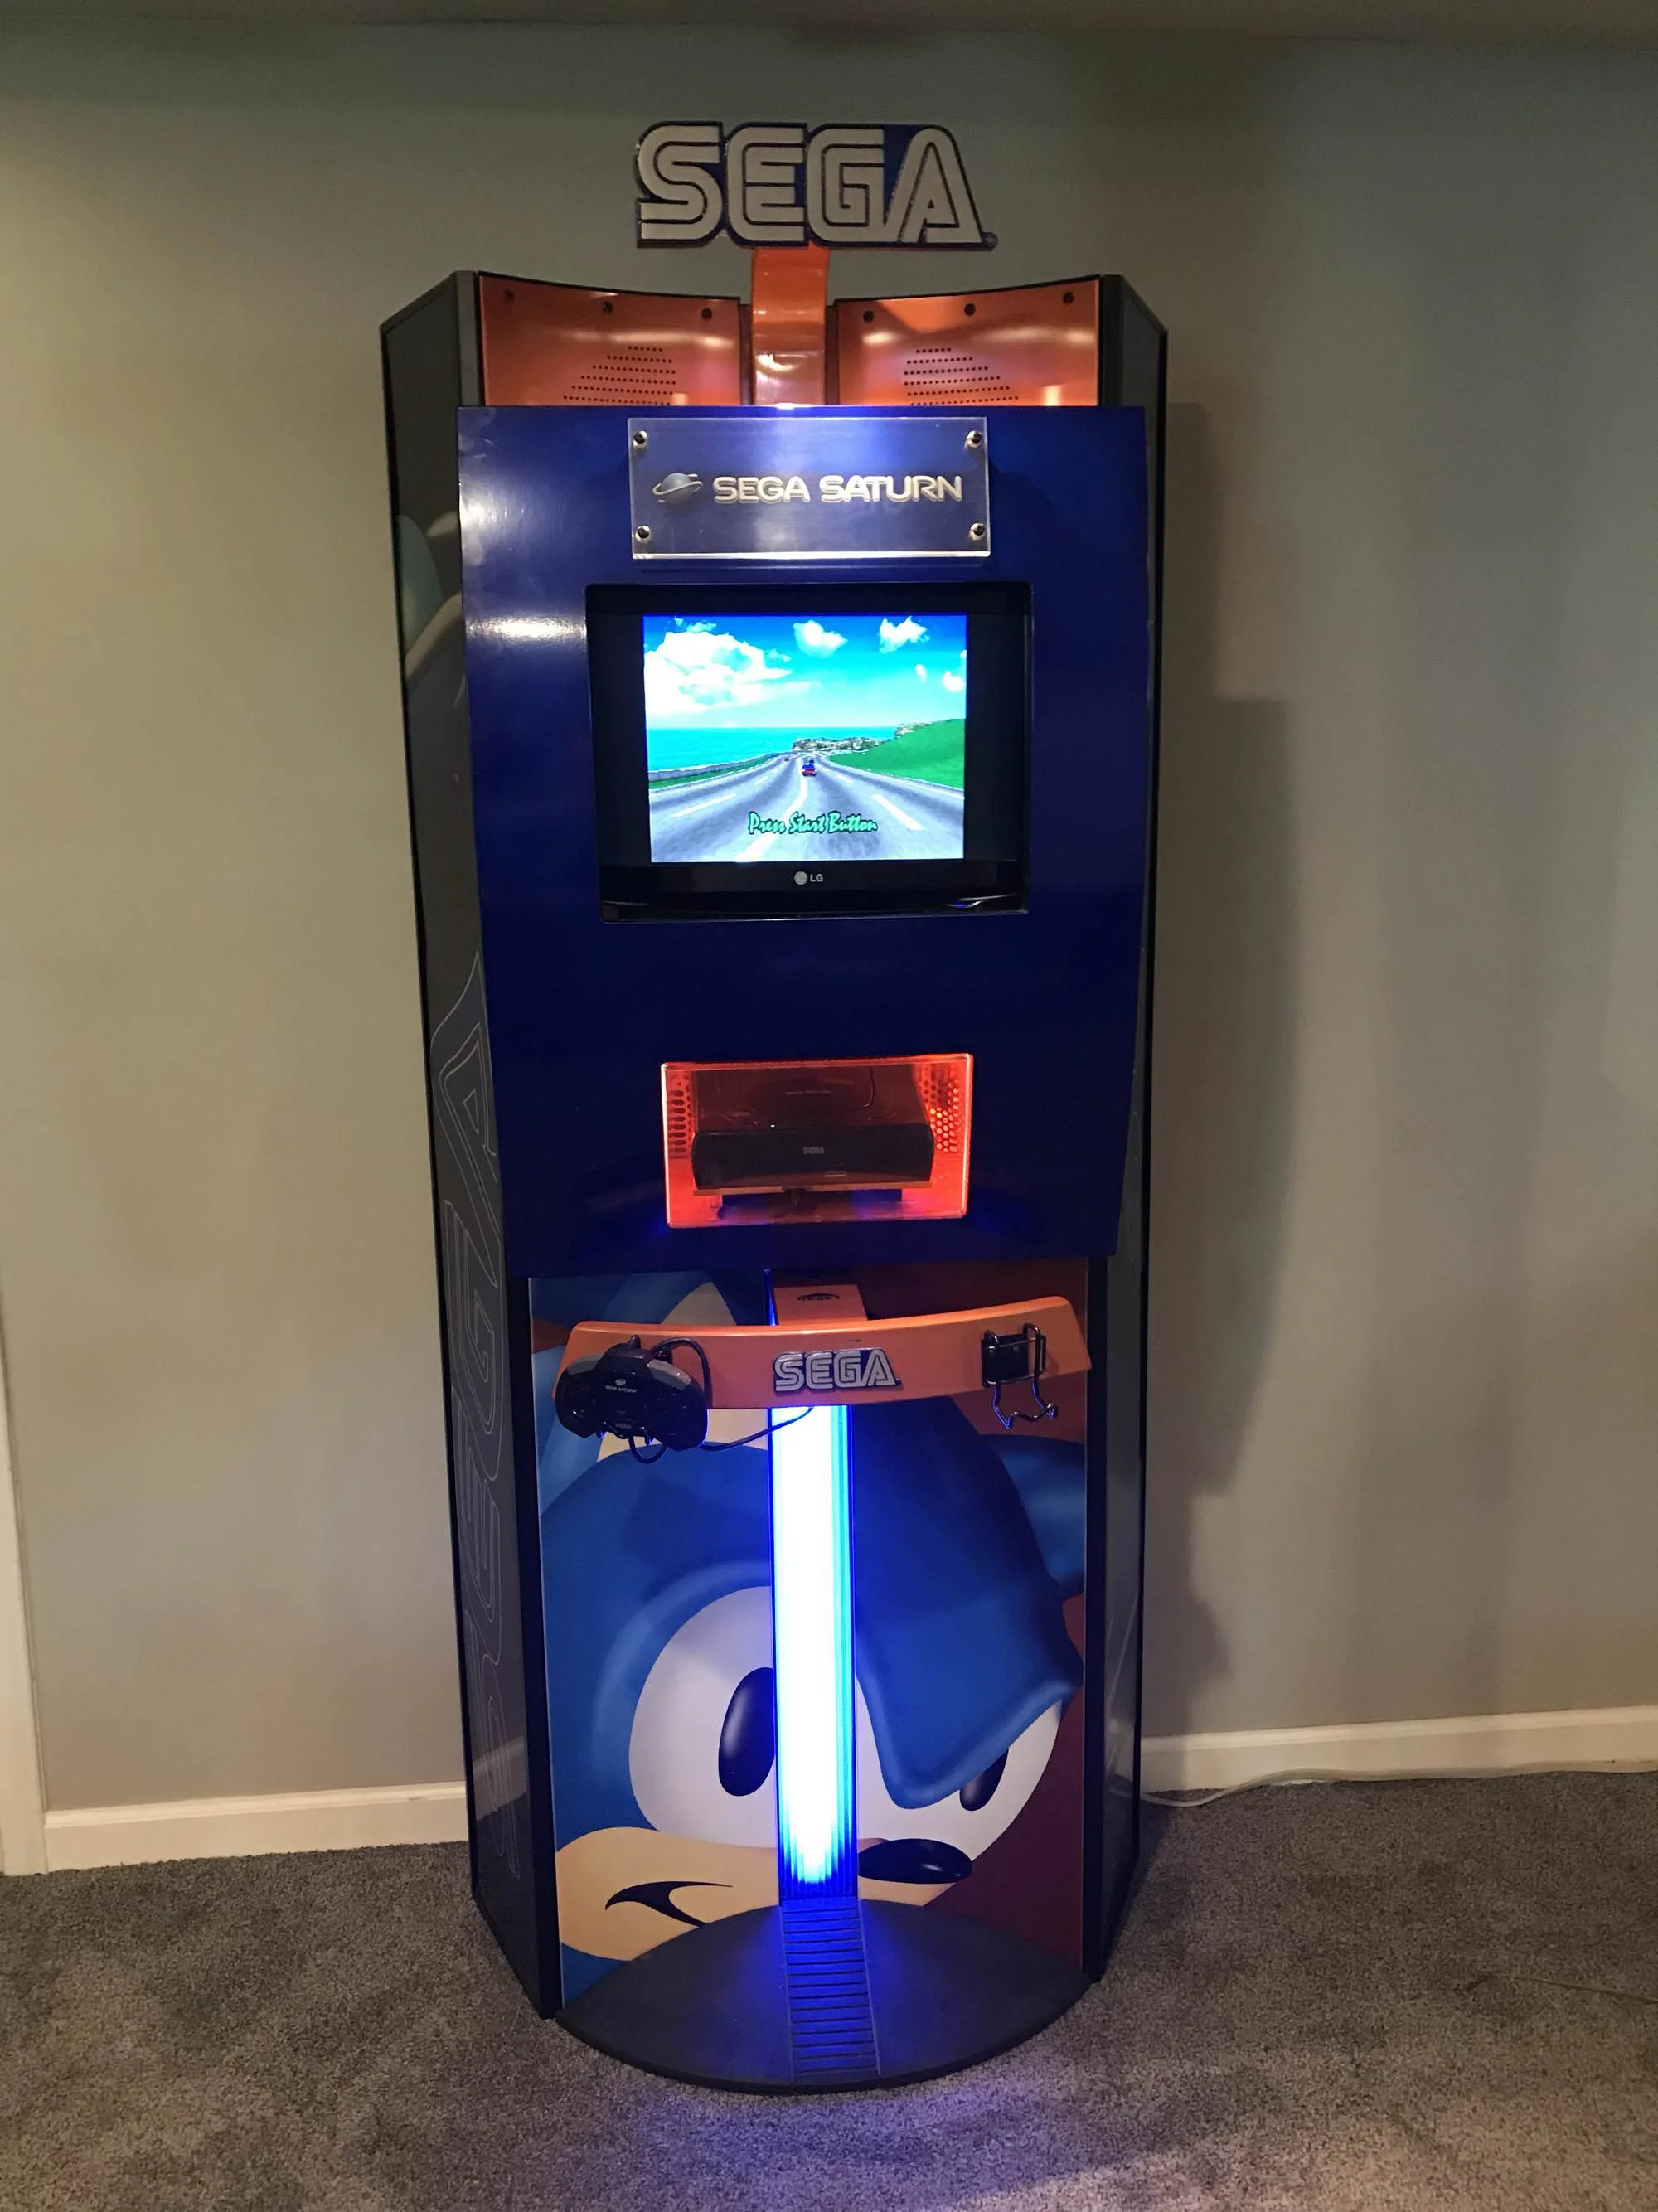  Sega Saturn Kiosk